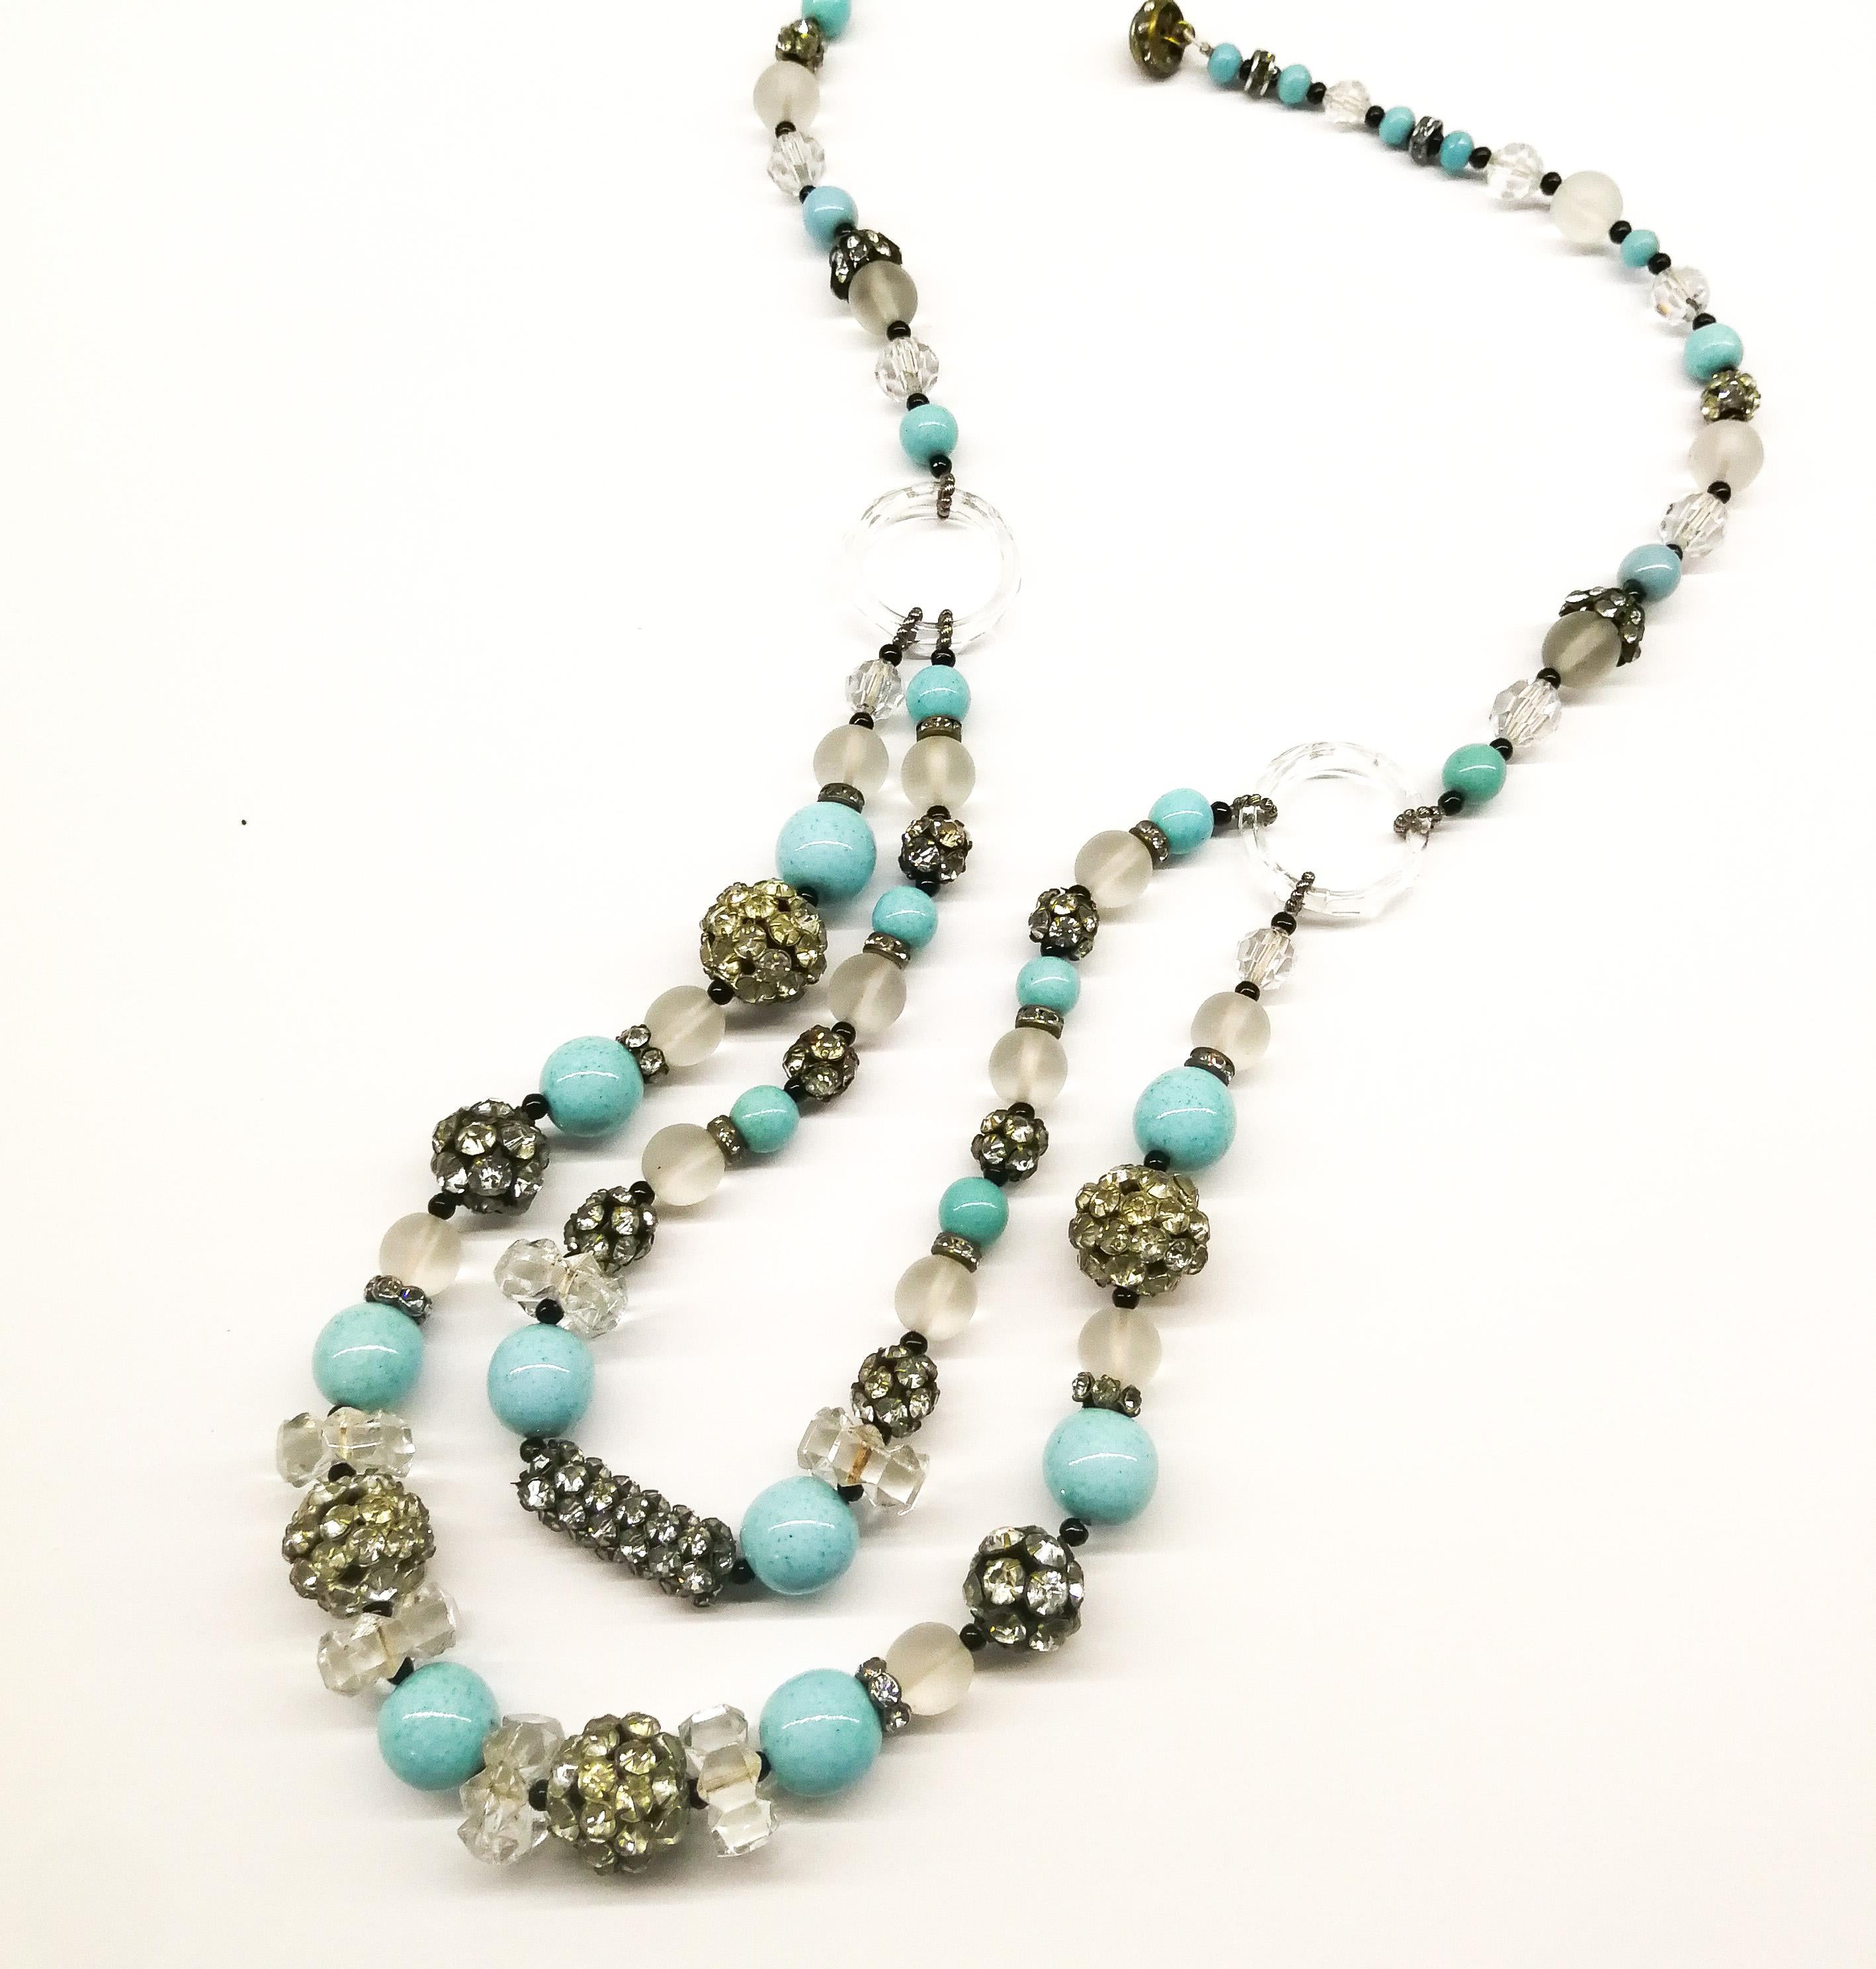 Diese wunderschöne Perlenkette, die sehr charakteristisch für die 1920er Jahre ist, hat eine leuchtende und dramatische Farbkombination aus Türkis und Schwarz, durchsetzt mit mattierten und klaren Glasperlen und klaren Pastenelementen. Eine einzelne